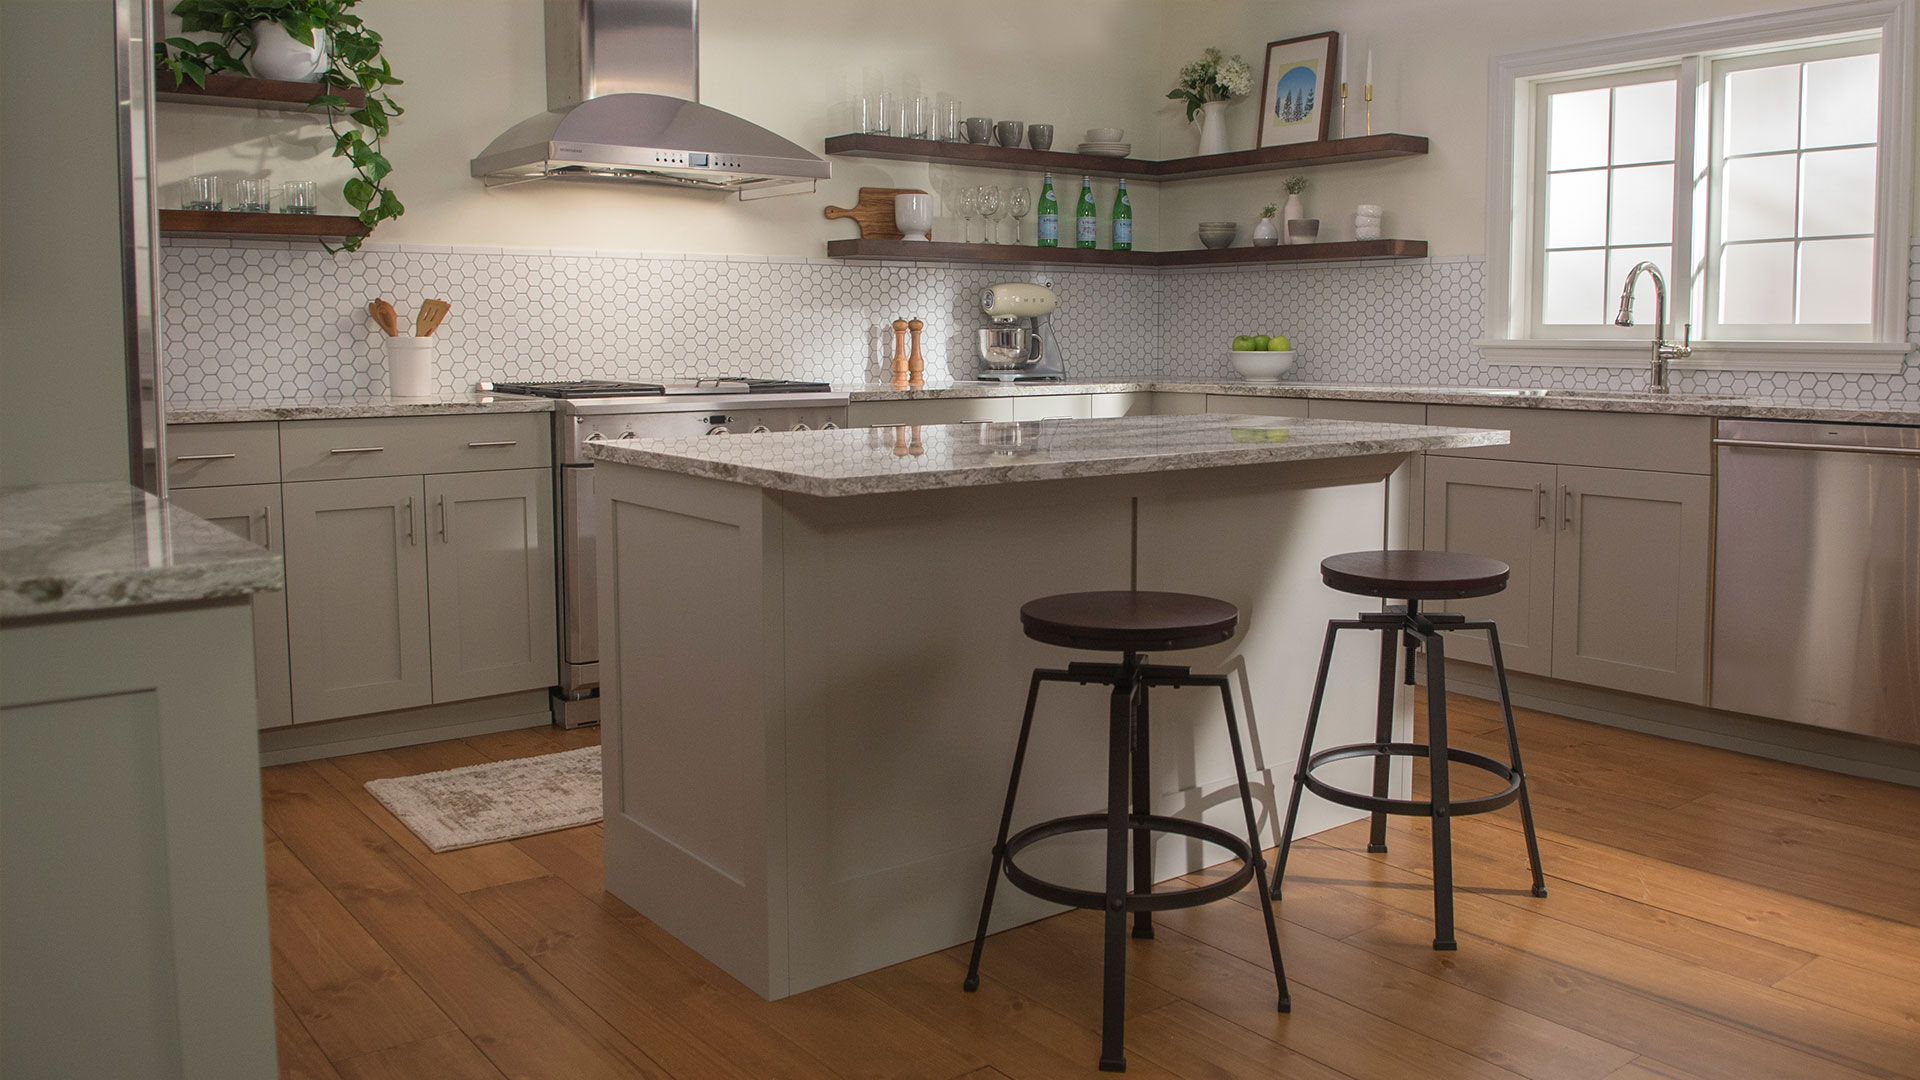 Cambria kitchen set - island, hood, tile, shelves